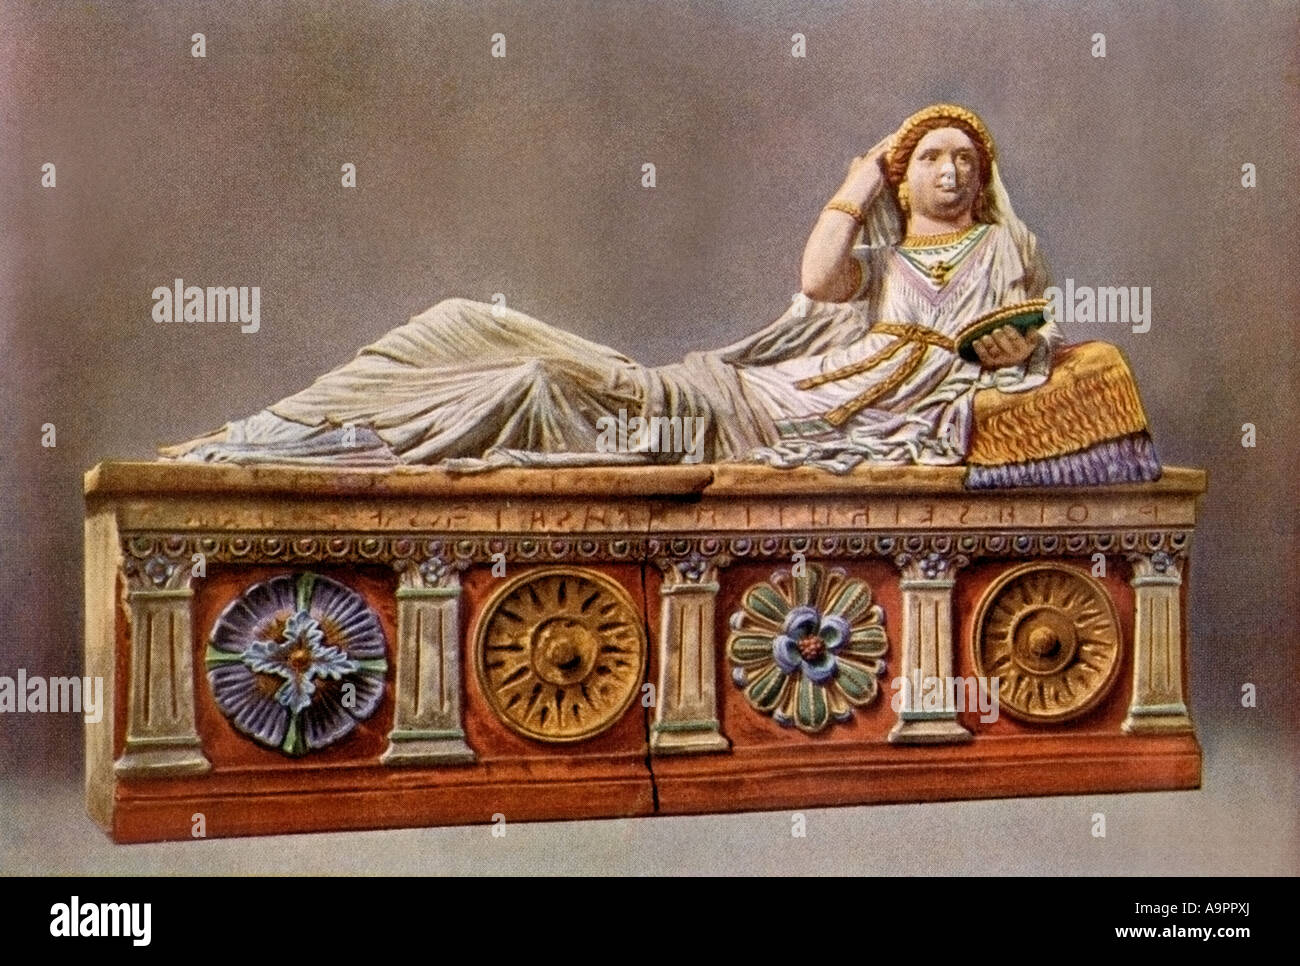 Sarcofago etrusco con una singola figura. Mezzitoni a colori di una fotografia Foto Stock